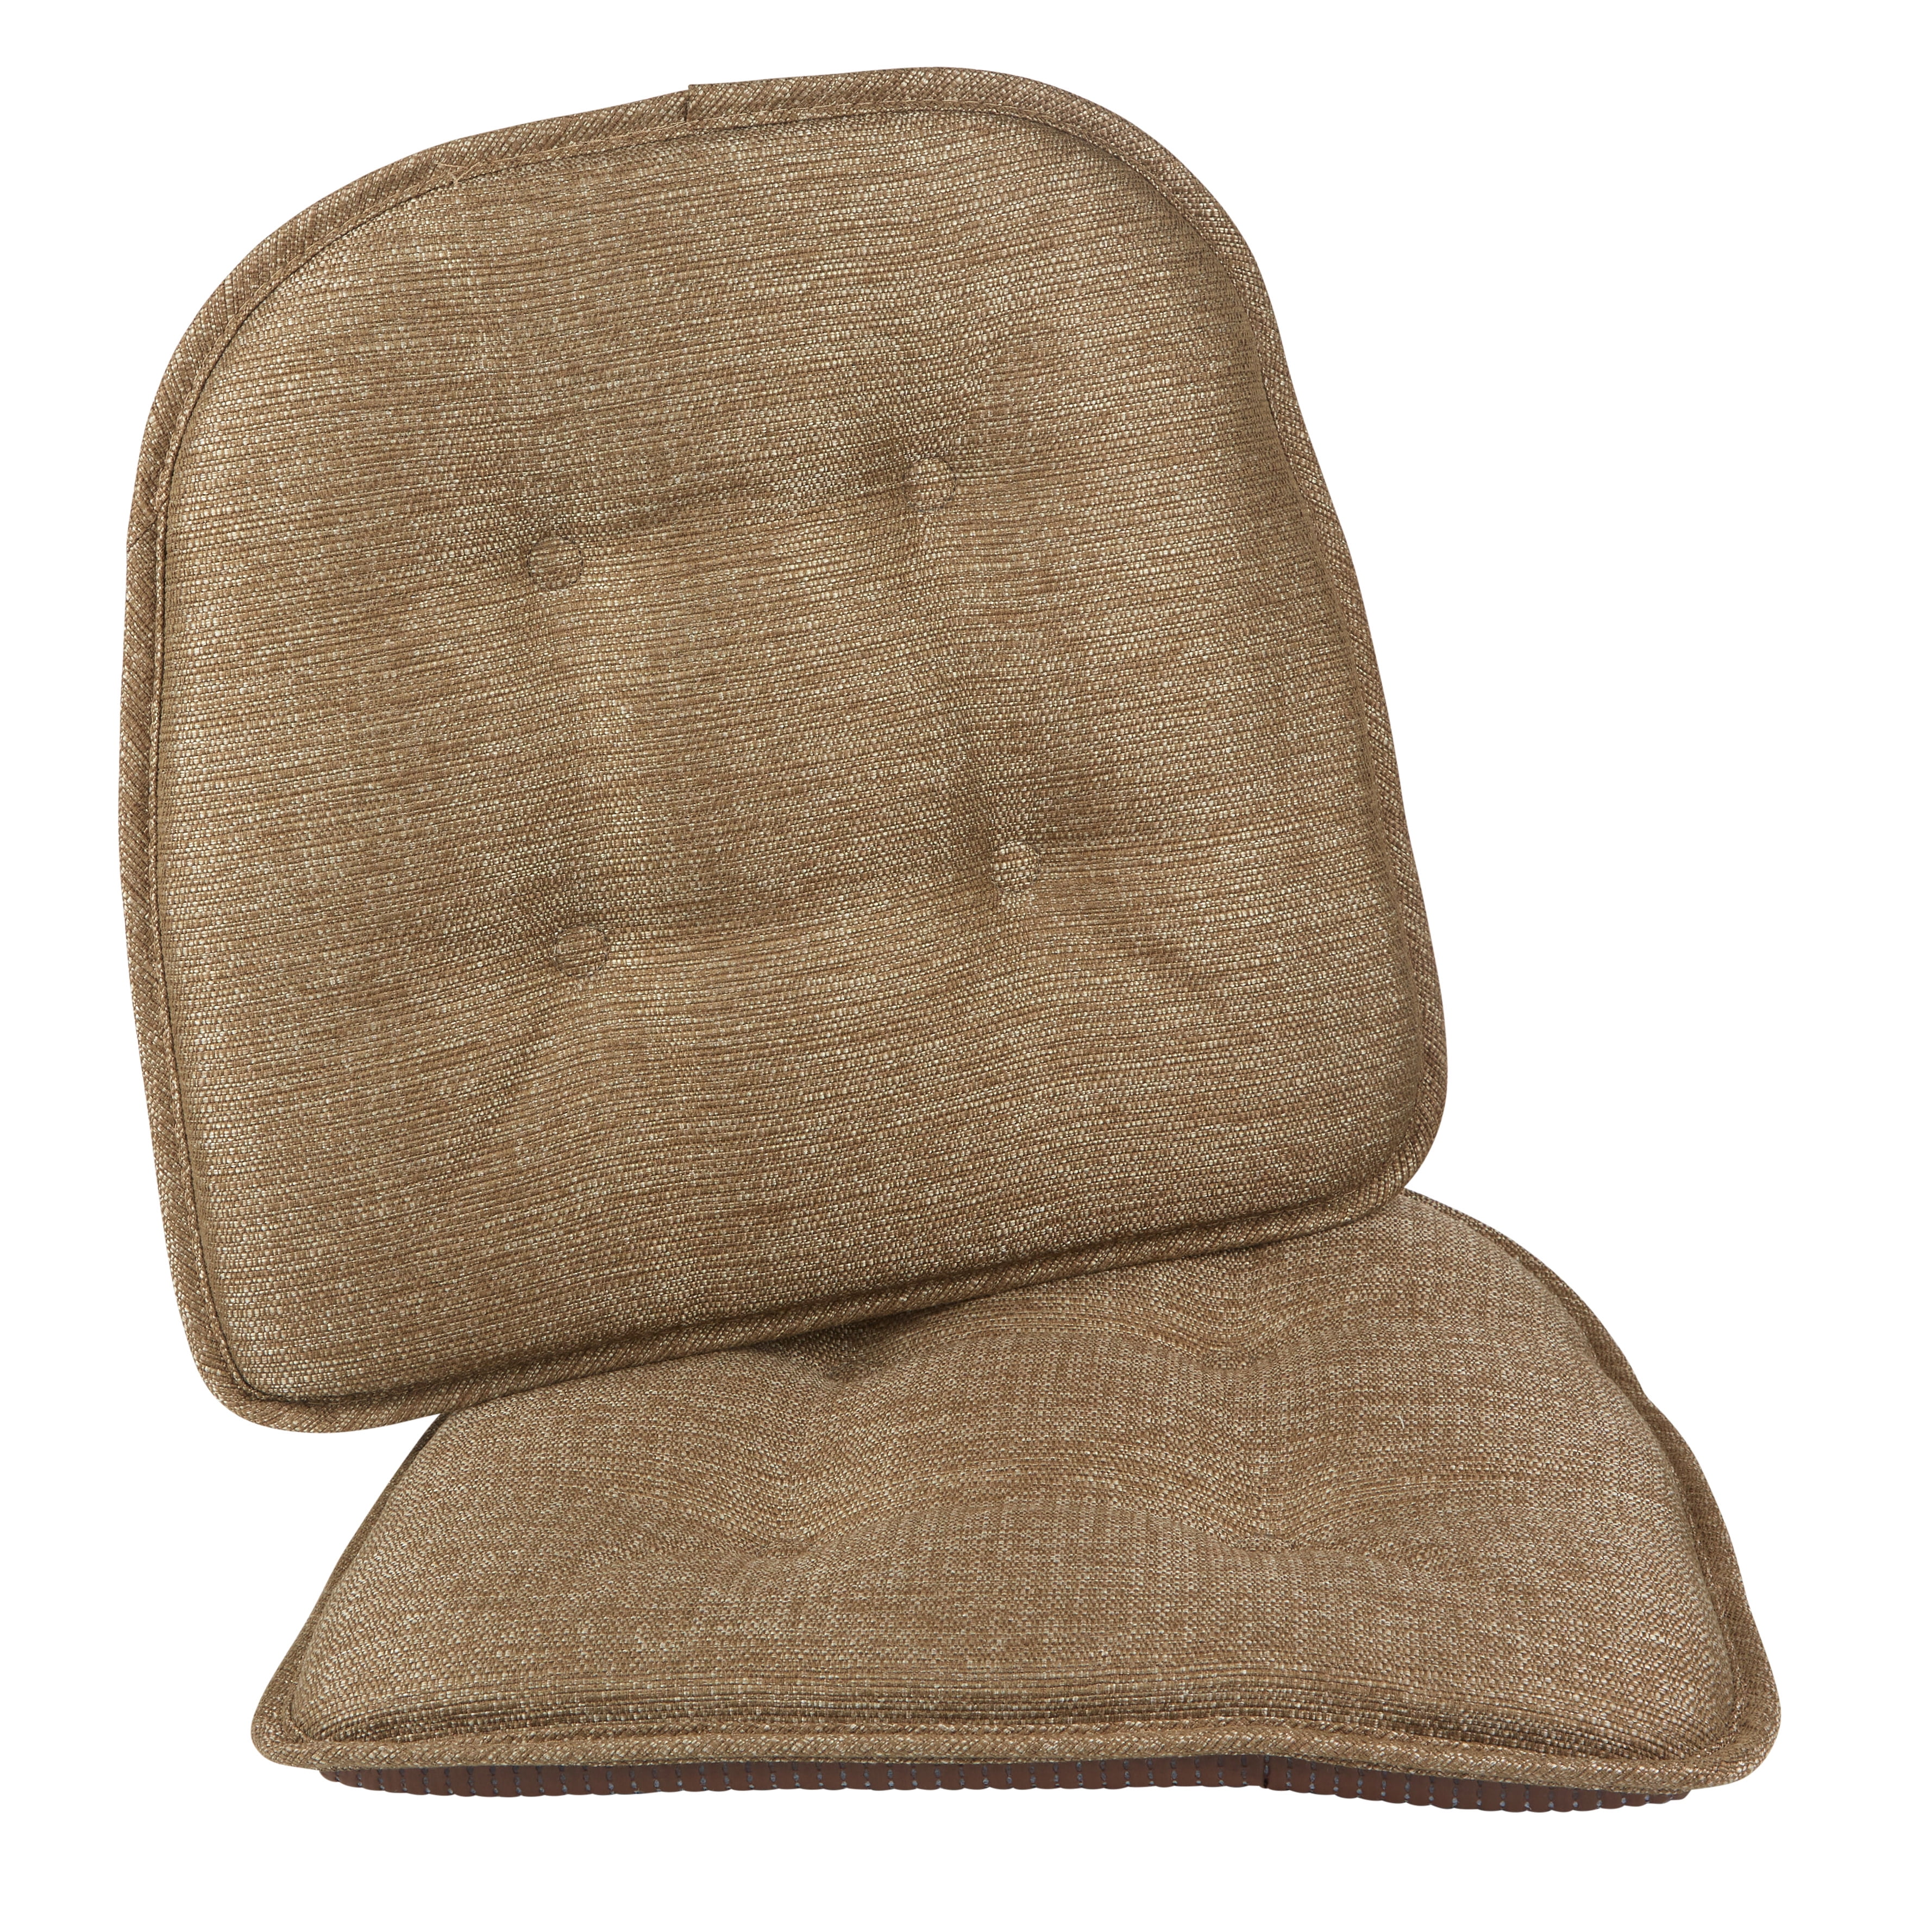 The Gripper Black Non-Slip Chair Cushion, Size: 15 inch x 16 inch